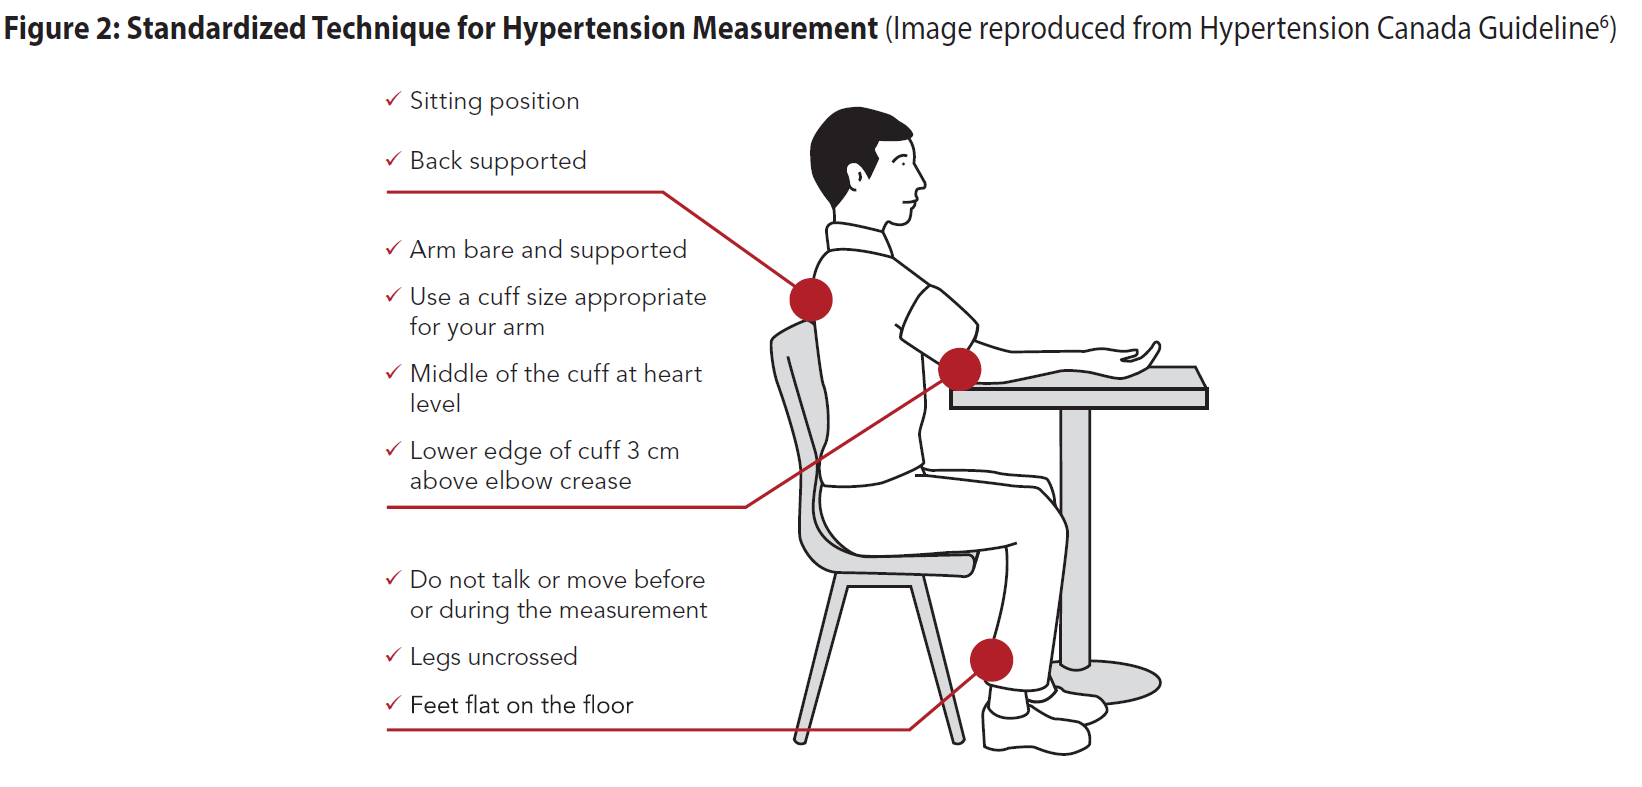 Standardized Technique for Hypertension Measurement